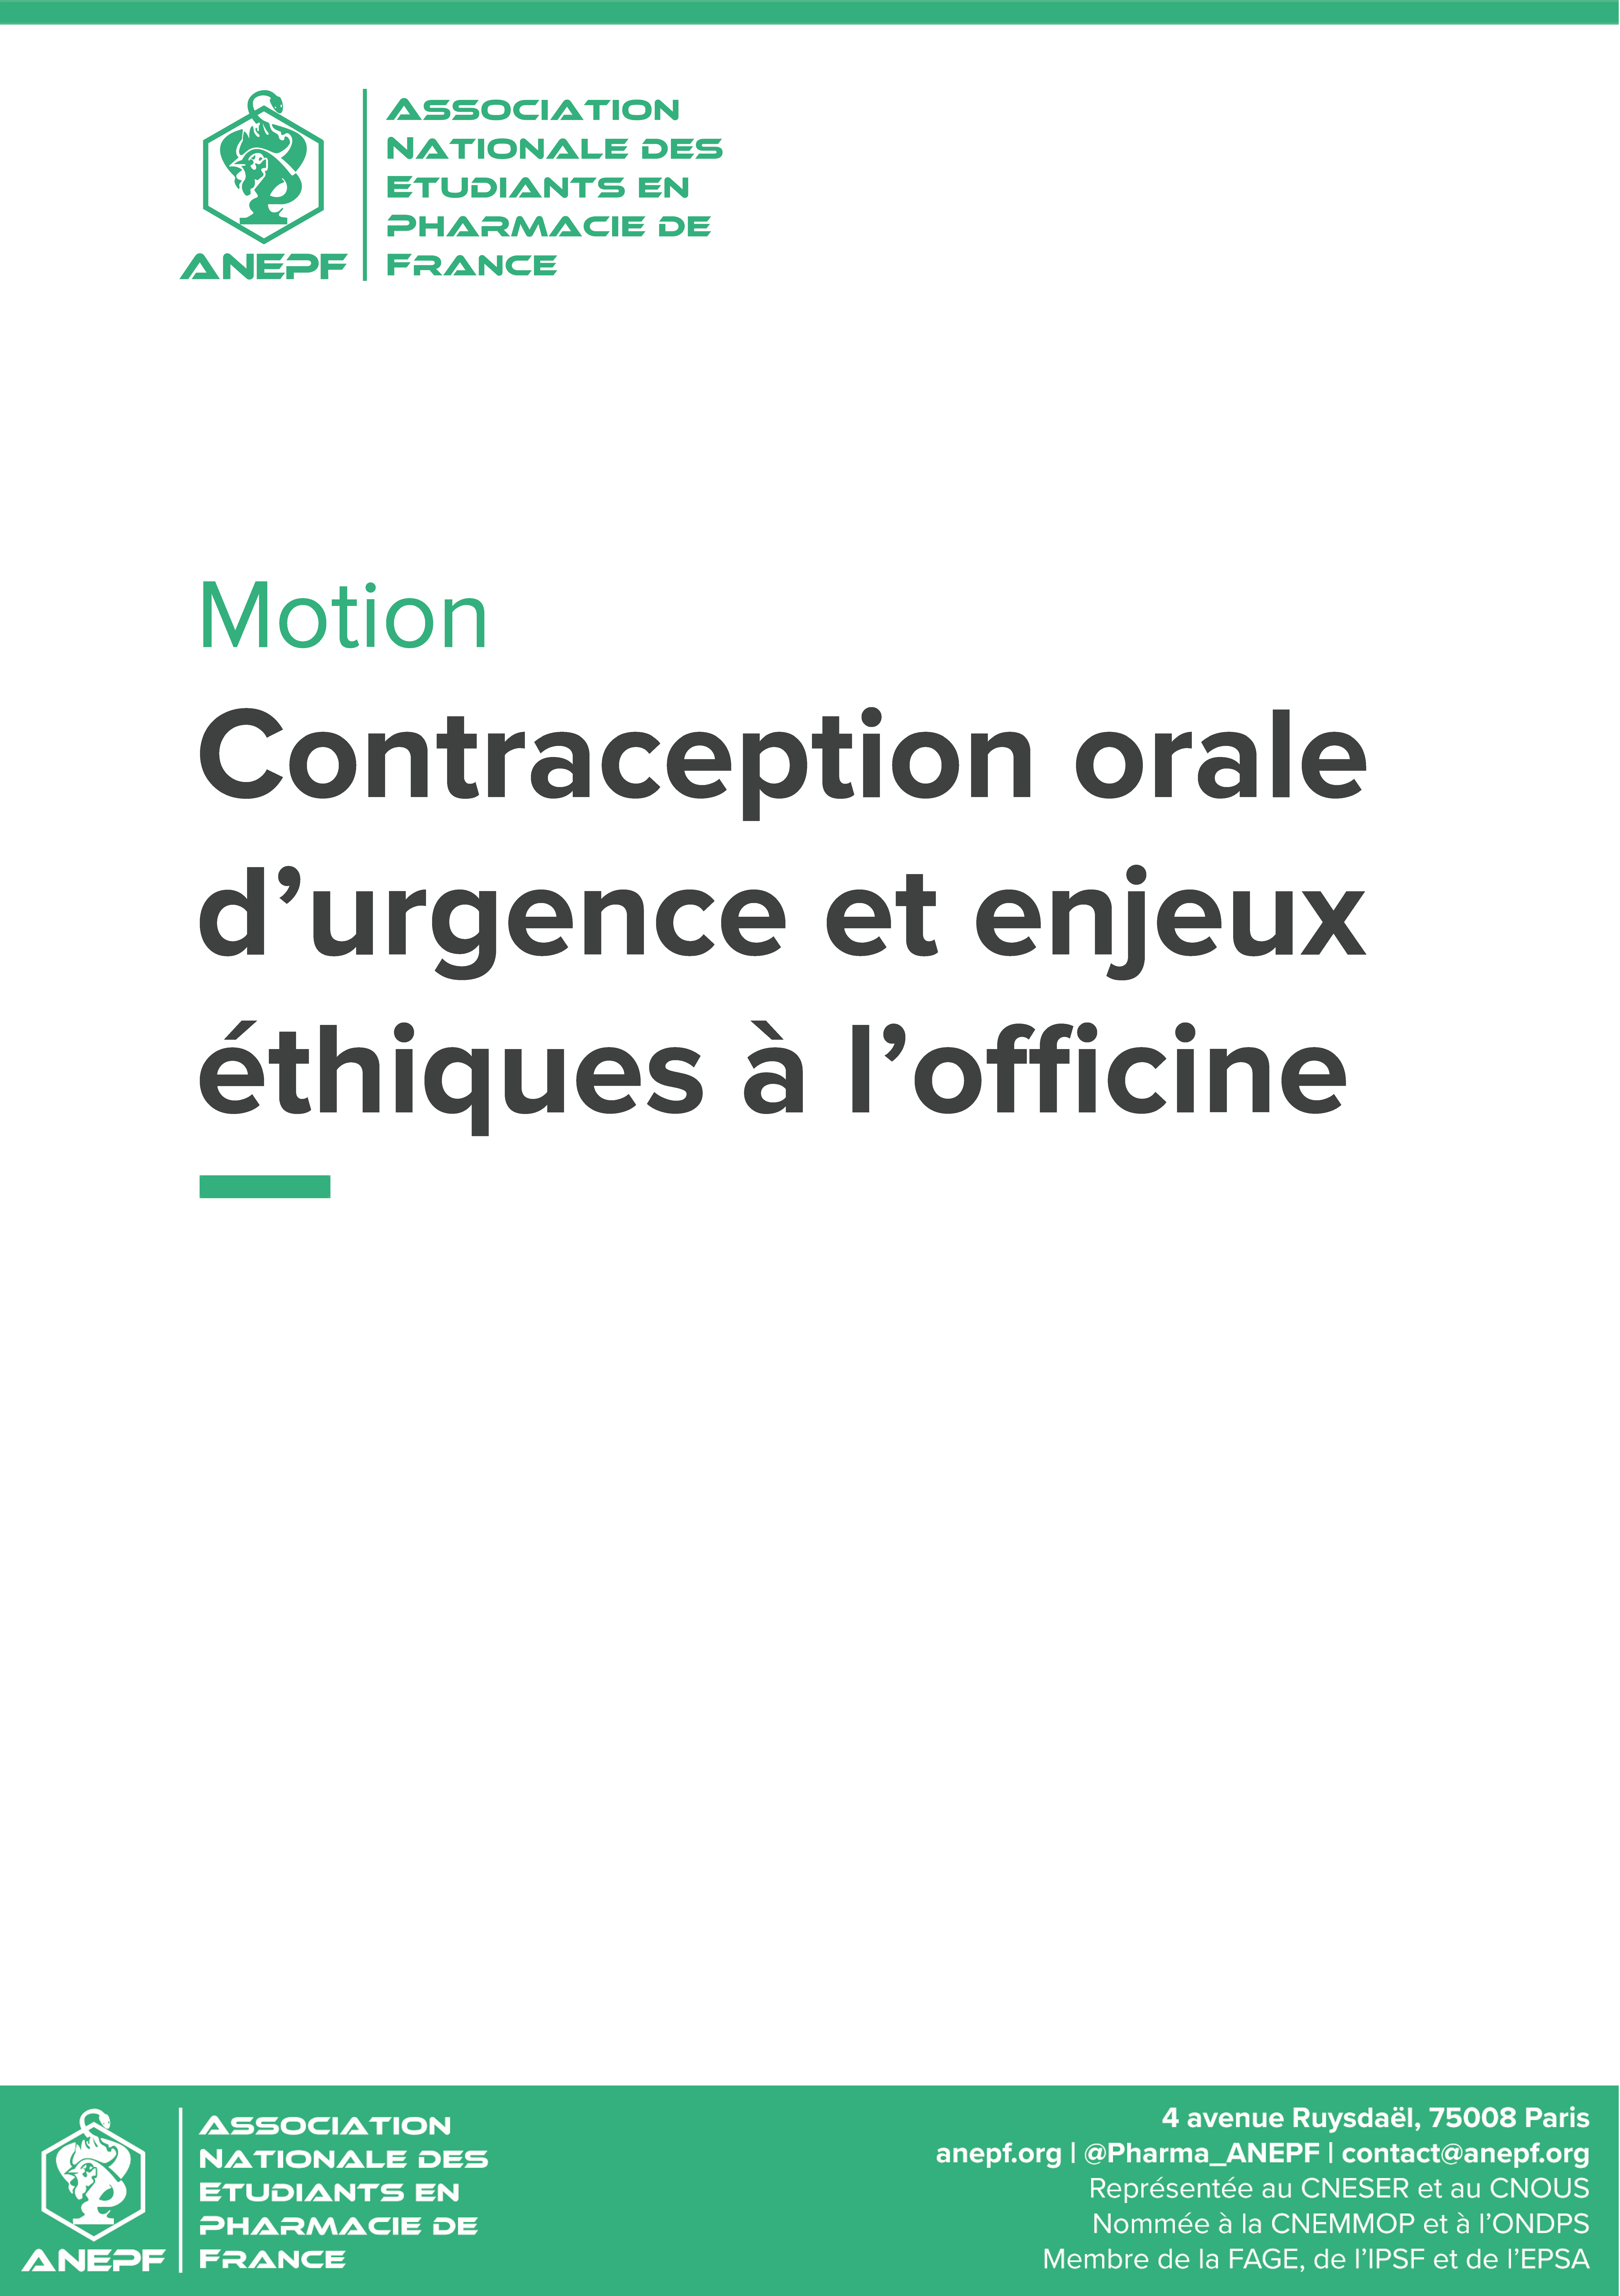 Motion contraception orale d’urgence